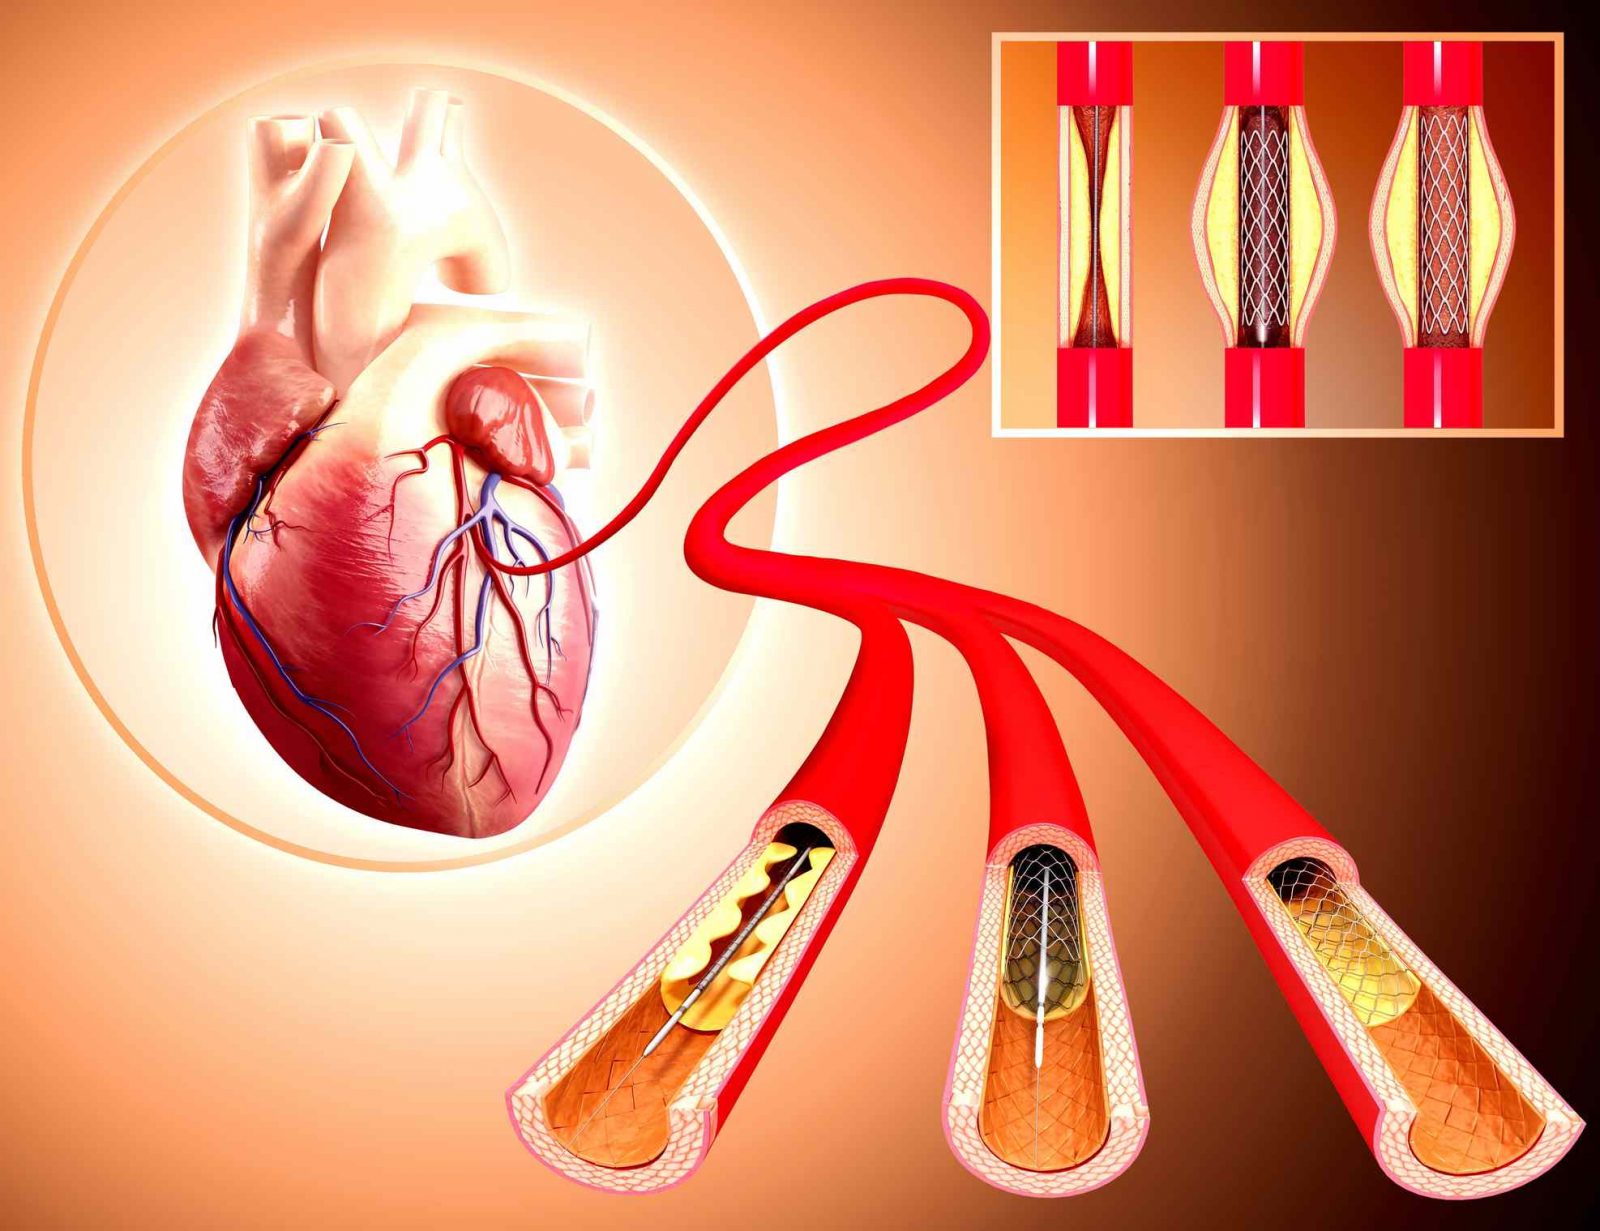  آنژیوپلاستی و درمان بیماری های قلبی